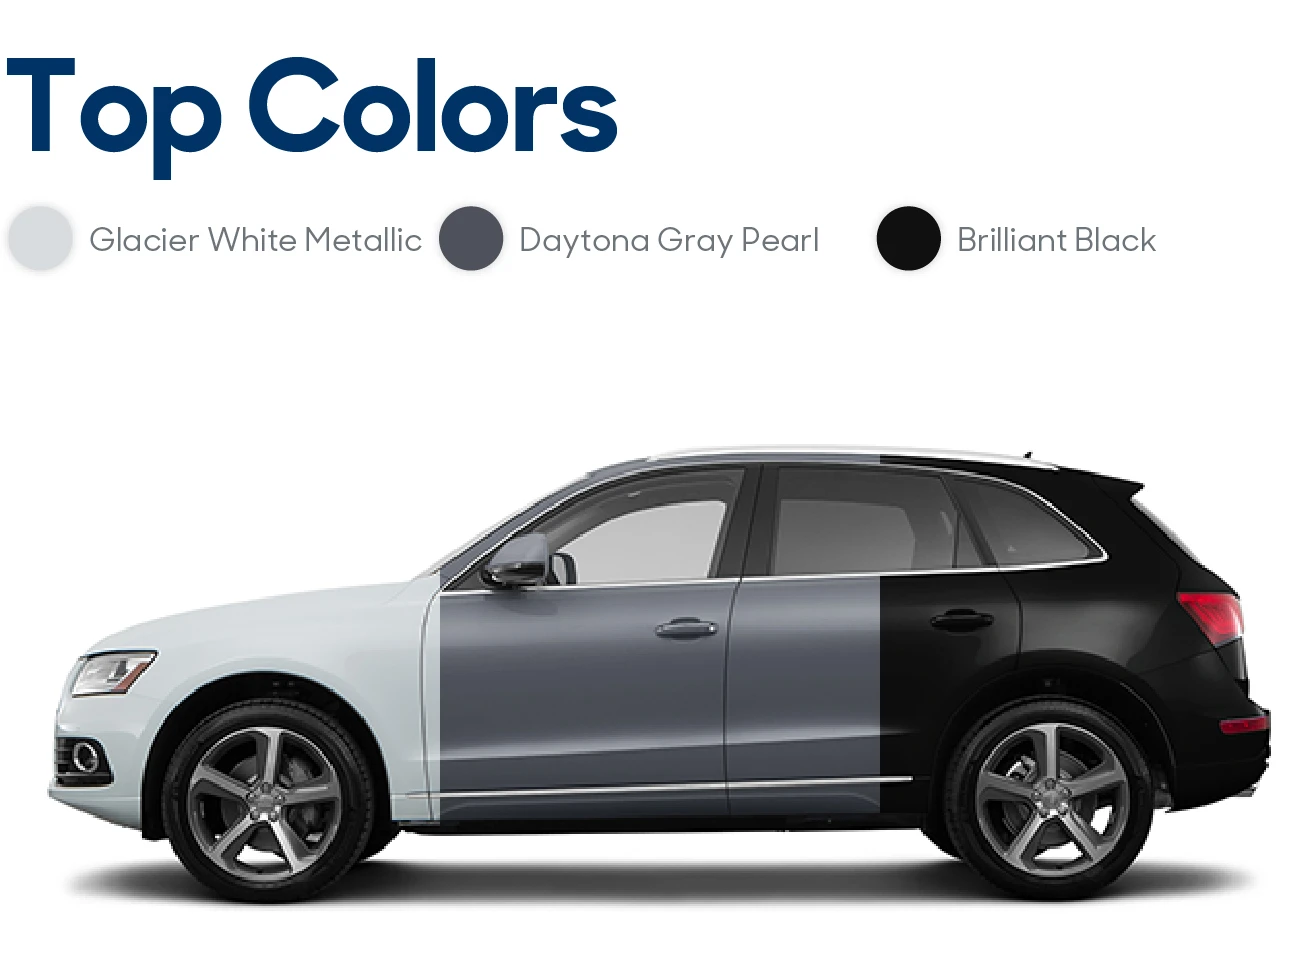 2016 Audi Q5 Review: Top Colors | CarMax